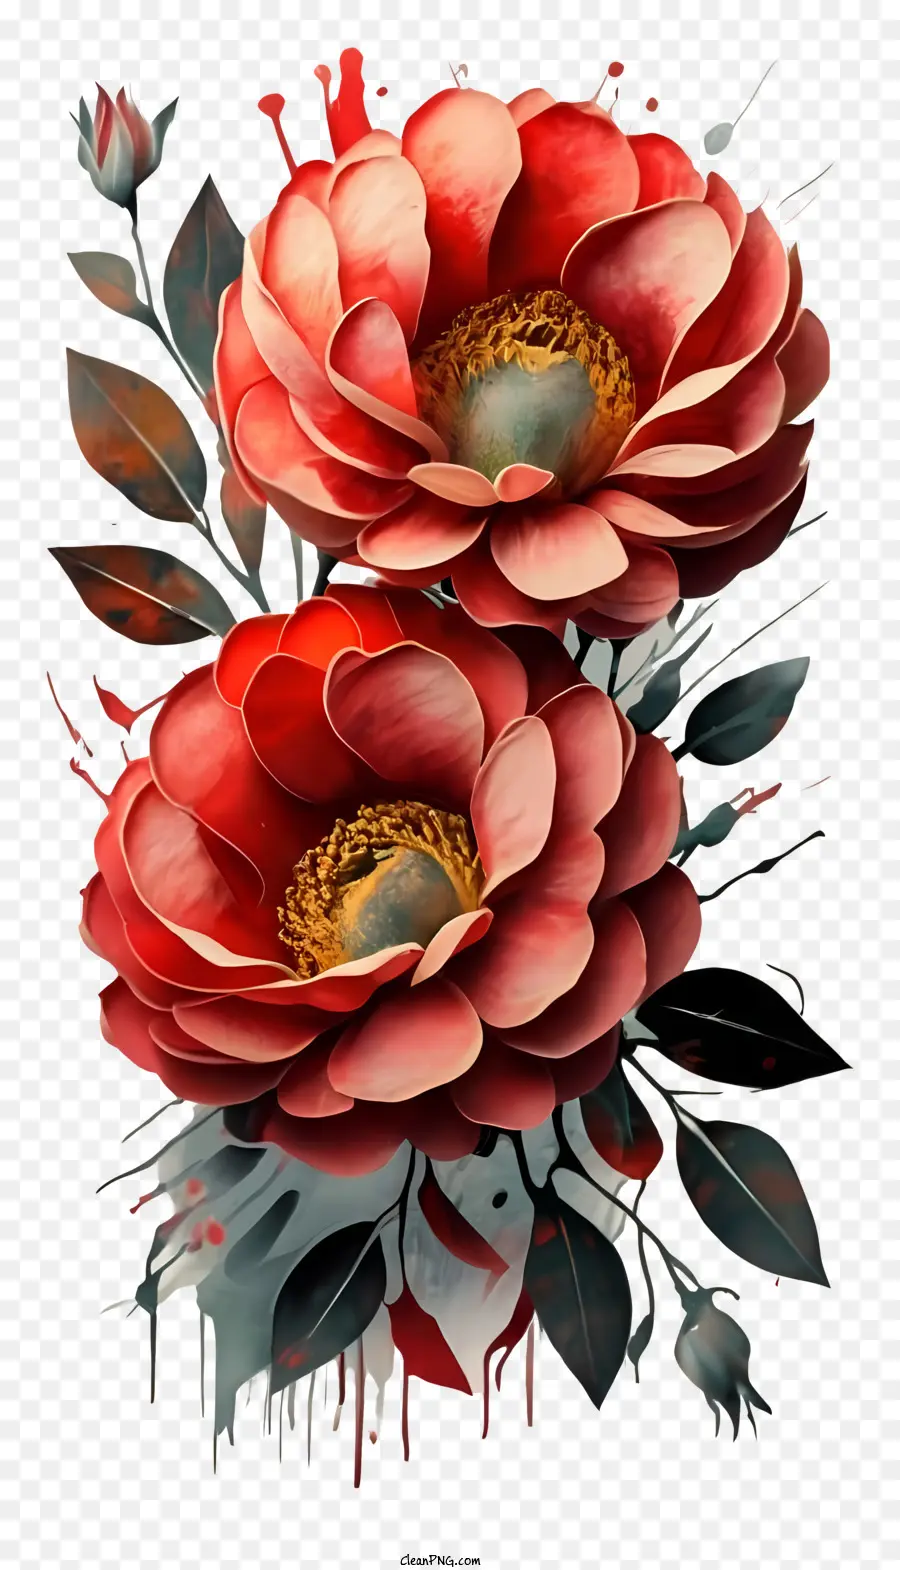 pittura digitale fiori rossi gocce di vernice nera Vaso di sfondo nero o pentola - Dipinto digitale di fiori rossi con vernice nera